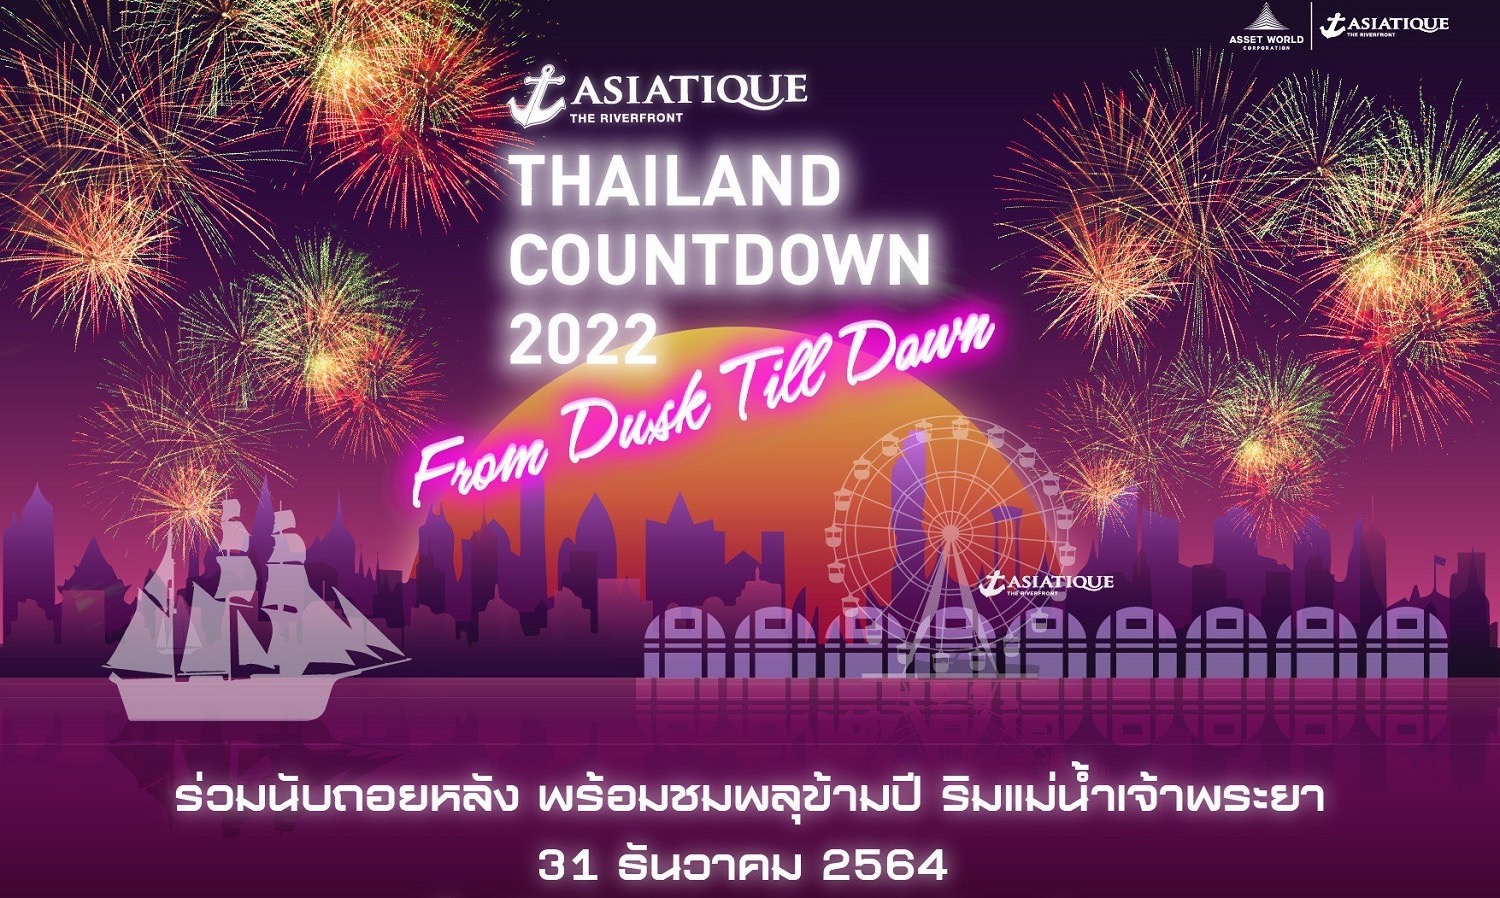 เอเชียทีค เดอะ ริเวอร์ฟร้อนท์ ชวนนับถอยหลังปีใหม่ในงาน “ASIATIQUE Thailand Countdown 2022” 